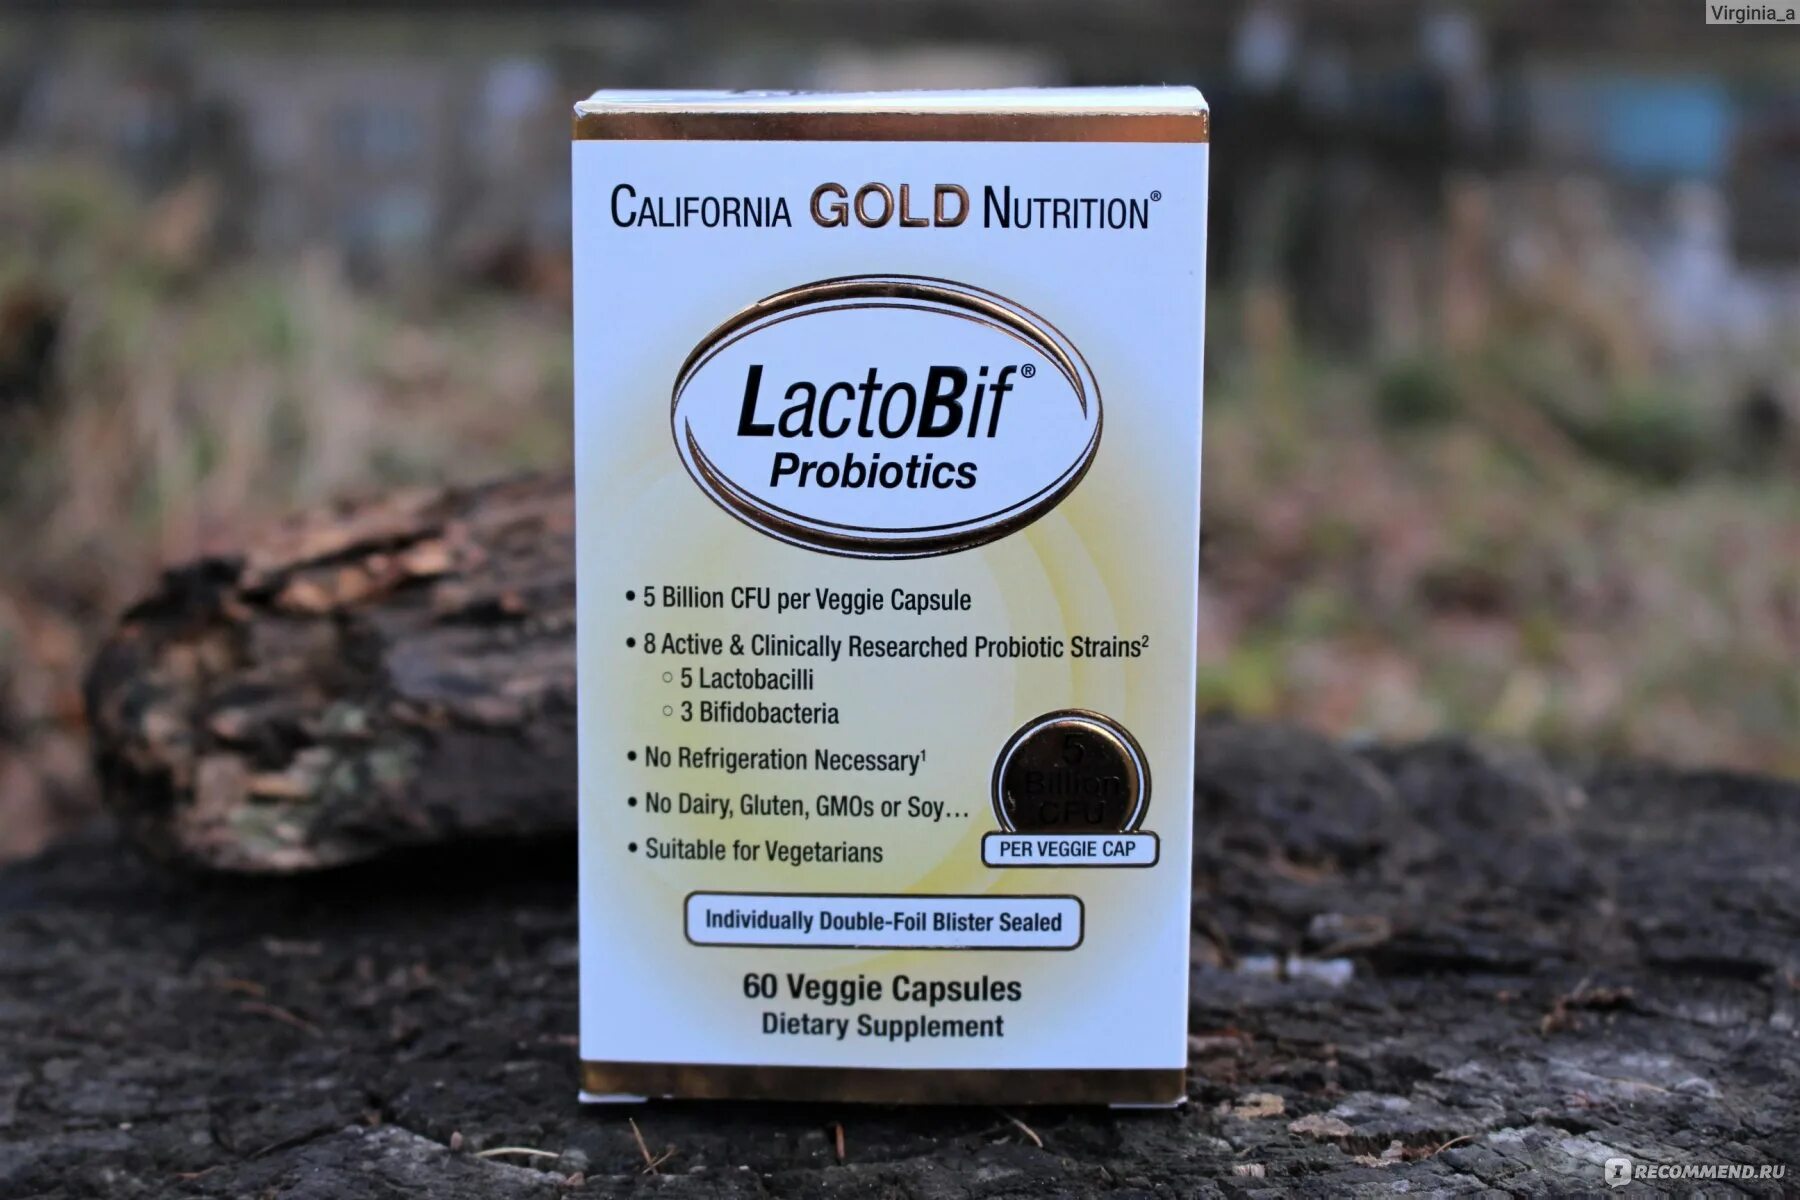 Gold nutrition lactobif